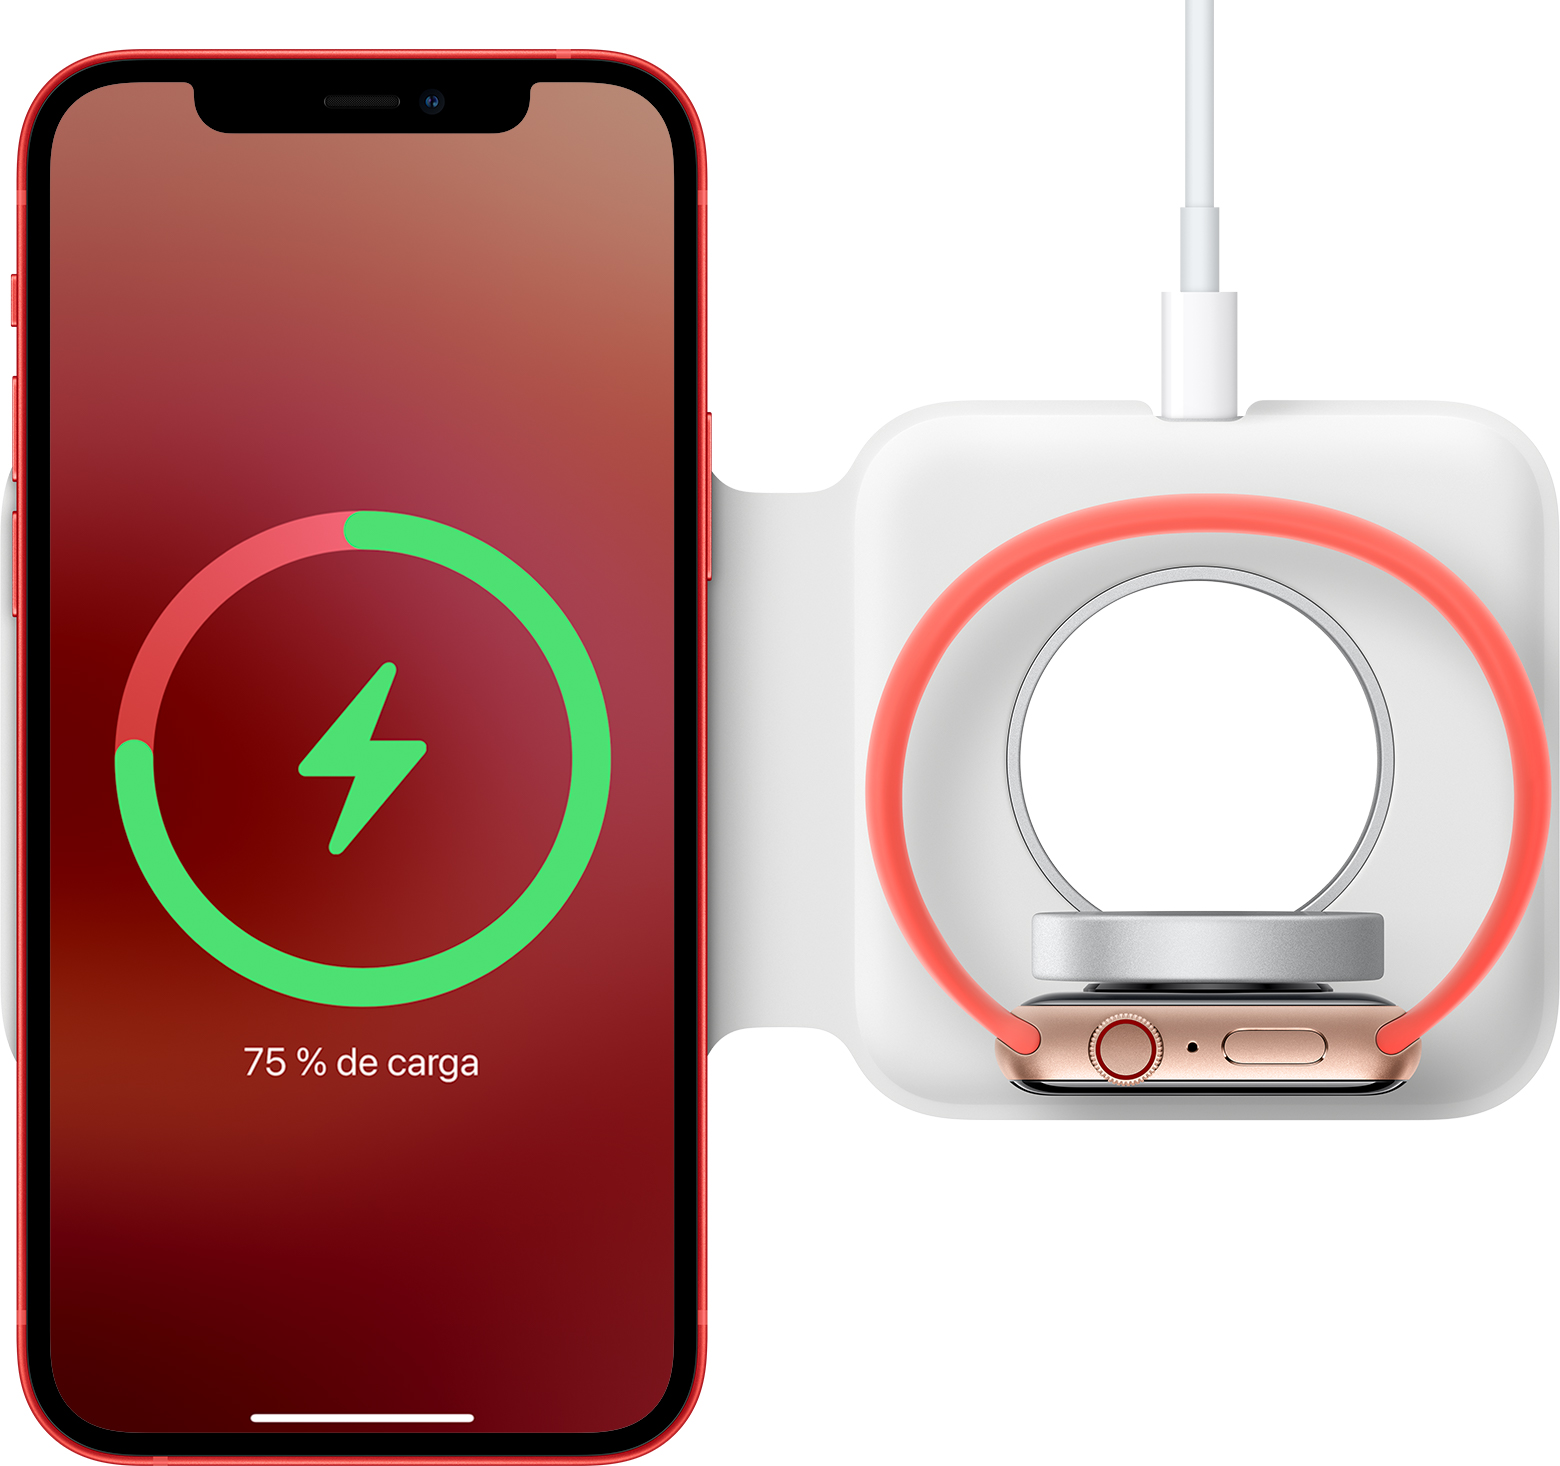 Cómo usar el cargador doble MagSafe con iPhone Apple Watch - Soporte técnico de (ES)